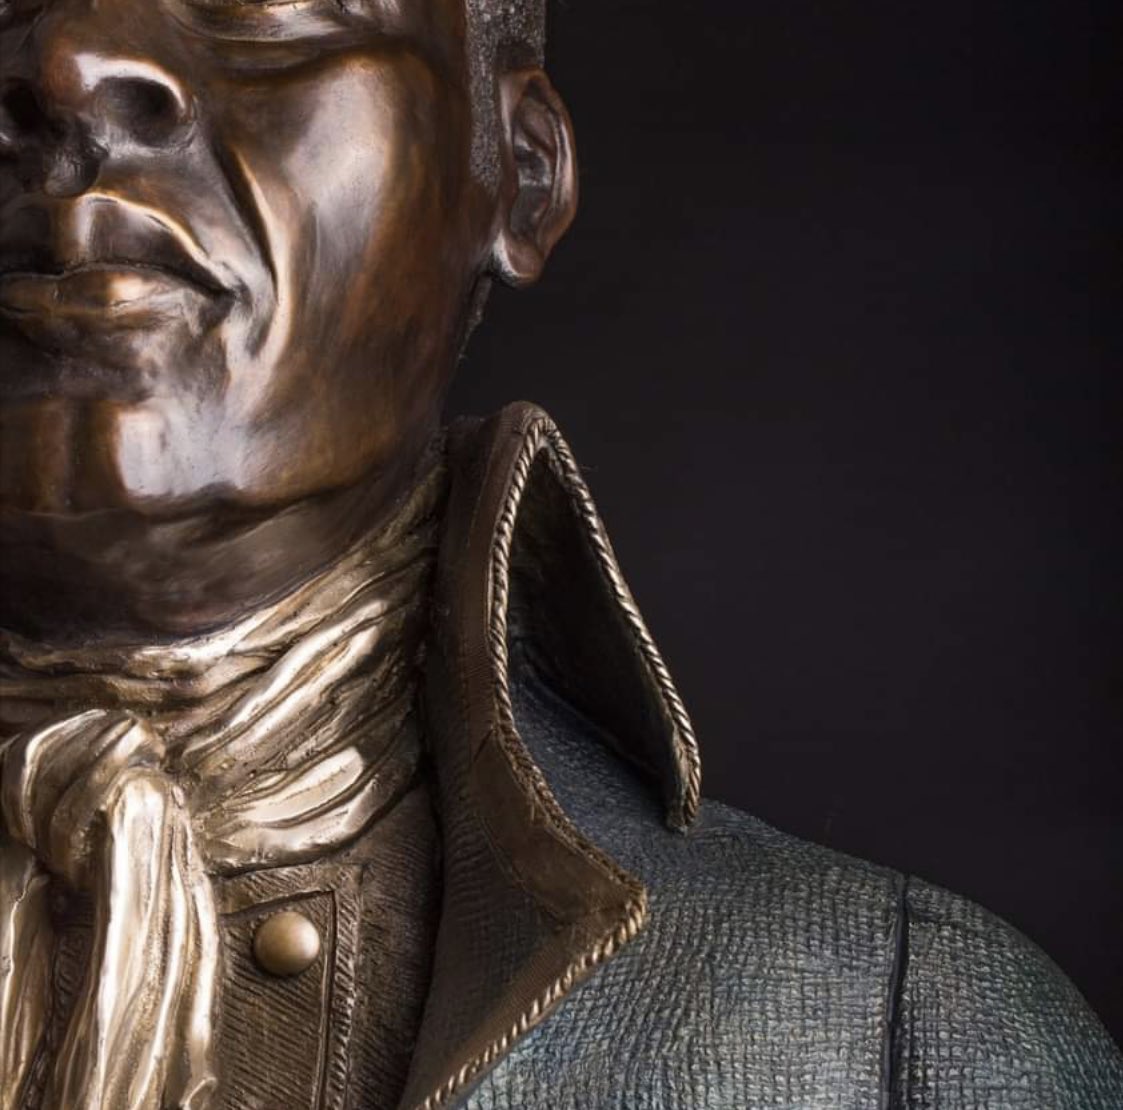 Mais il existe également des statues de Toussaint aux États-Unis au musée afro-américain - National Museum of African American History and Culture, au Bénin à Allada, au Canada (Québec, Montréal), à Cuba